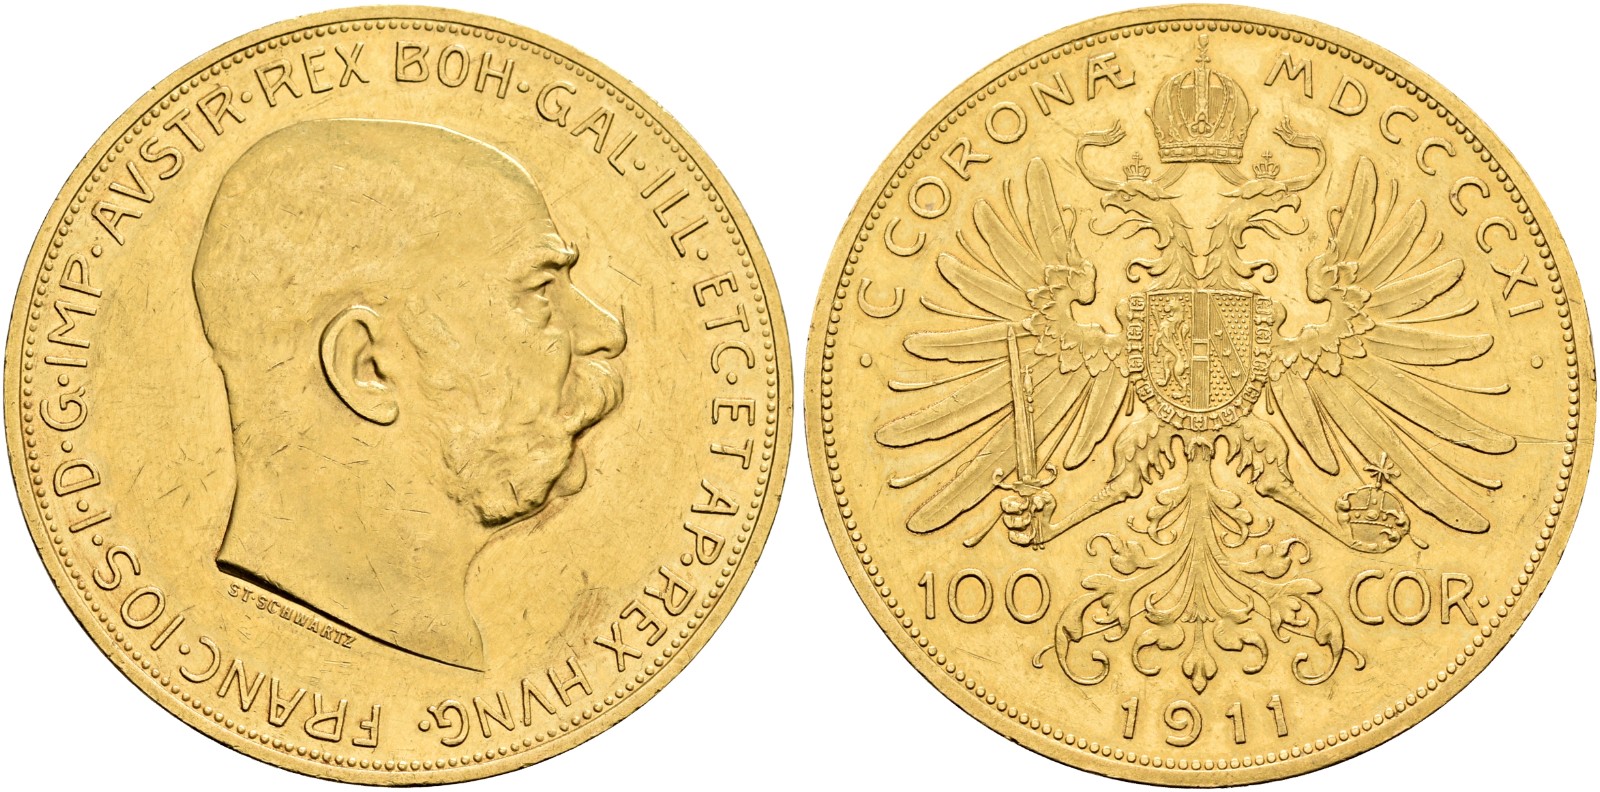 AT 100 Kronen 1911